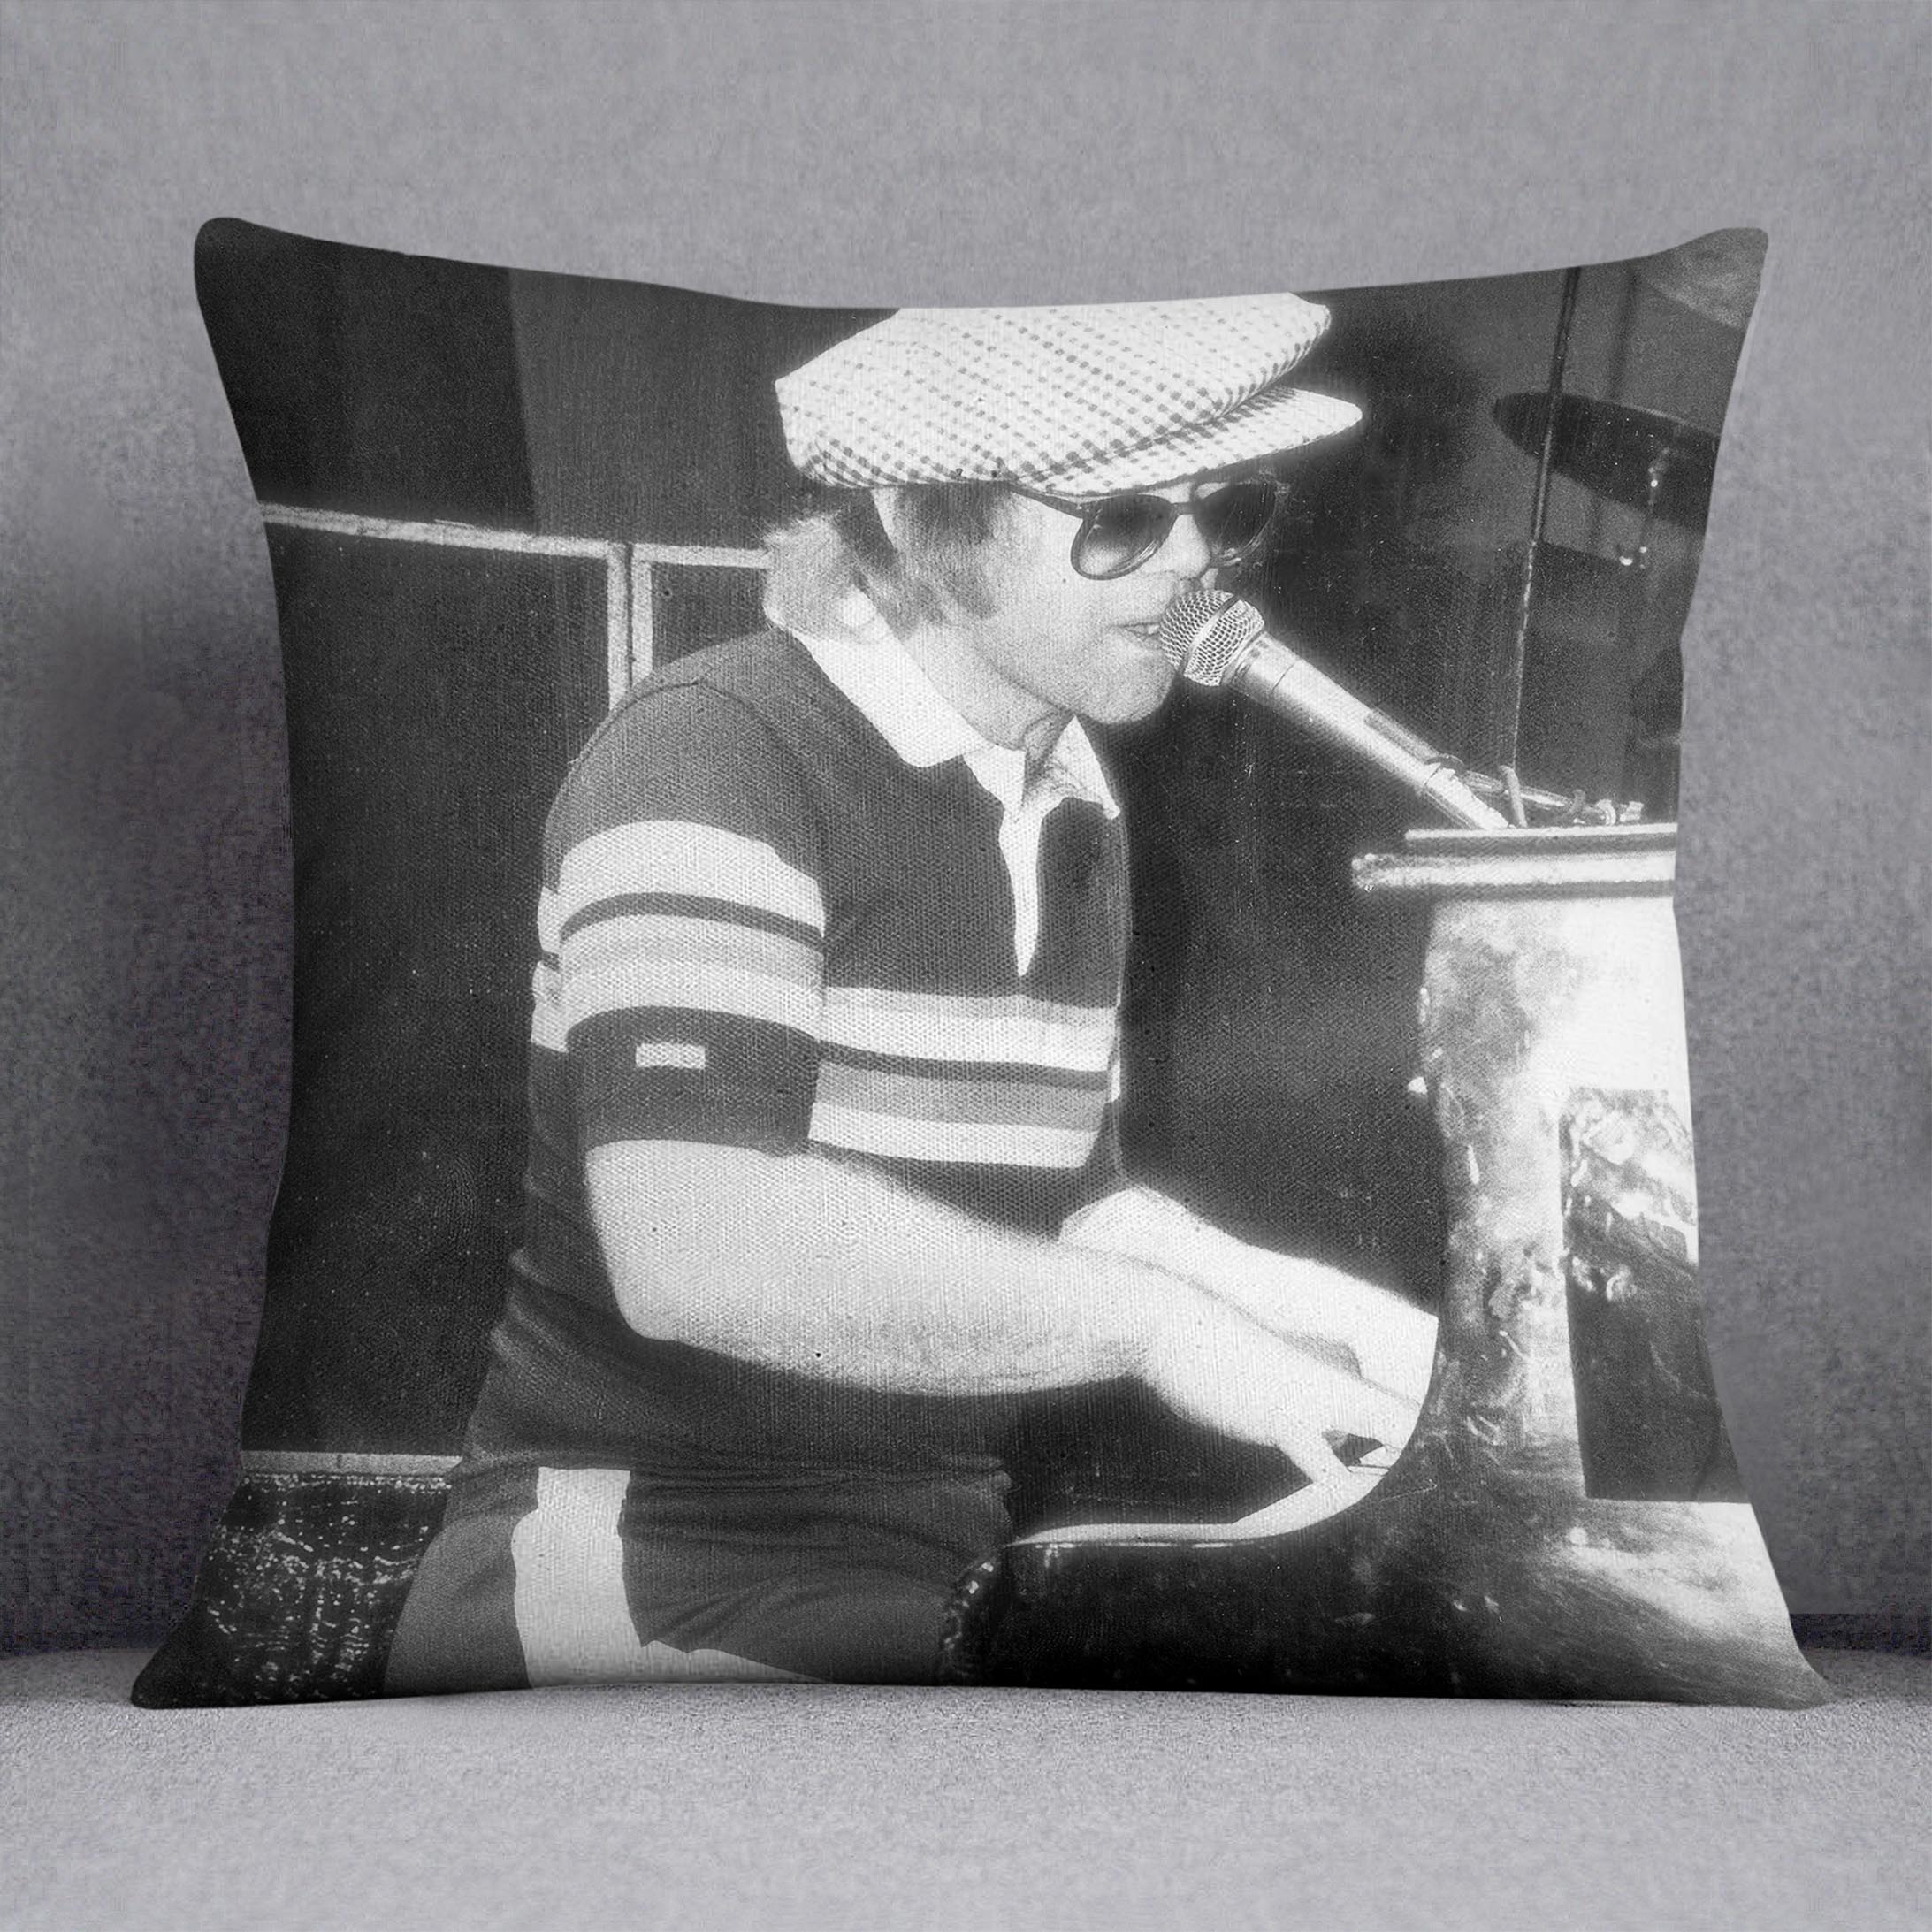 Elton John at the piano Cushion